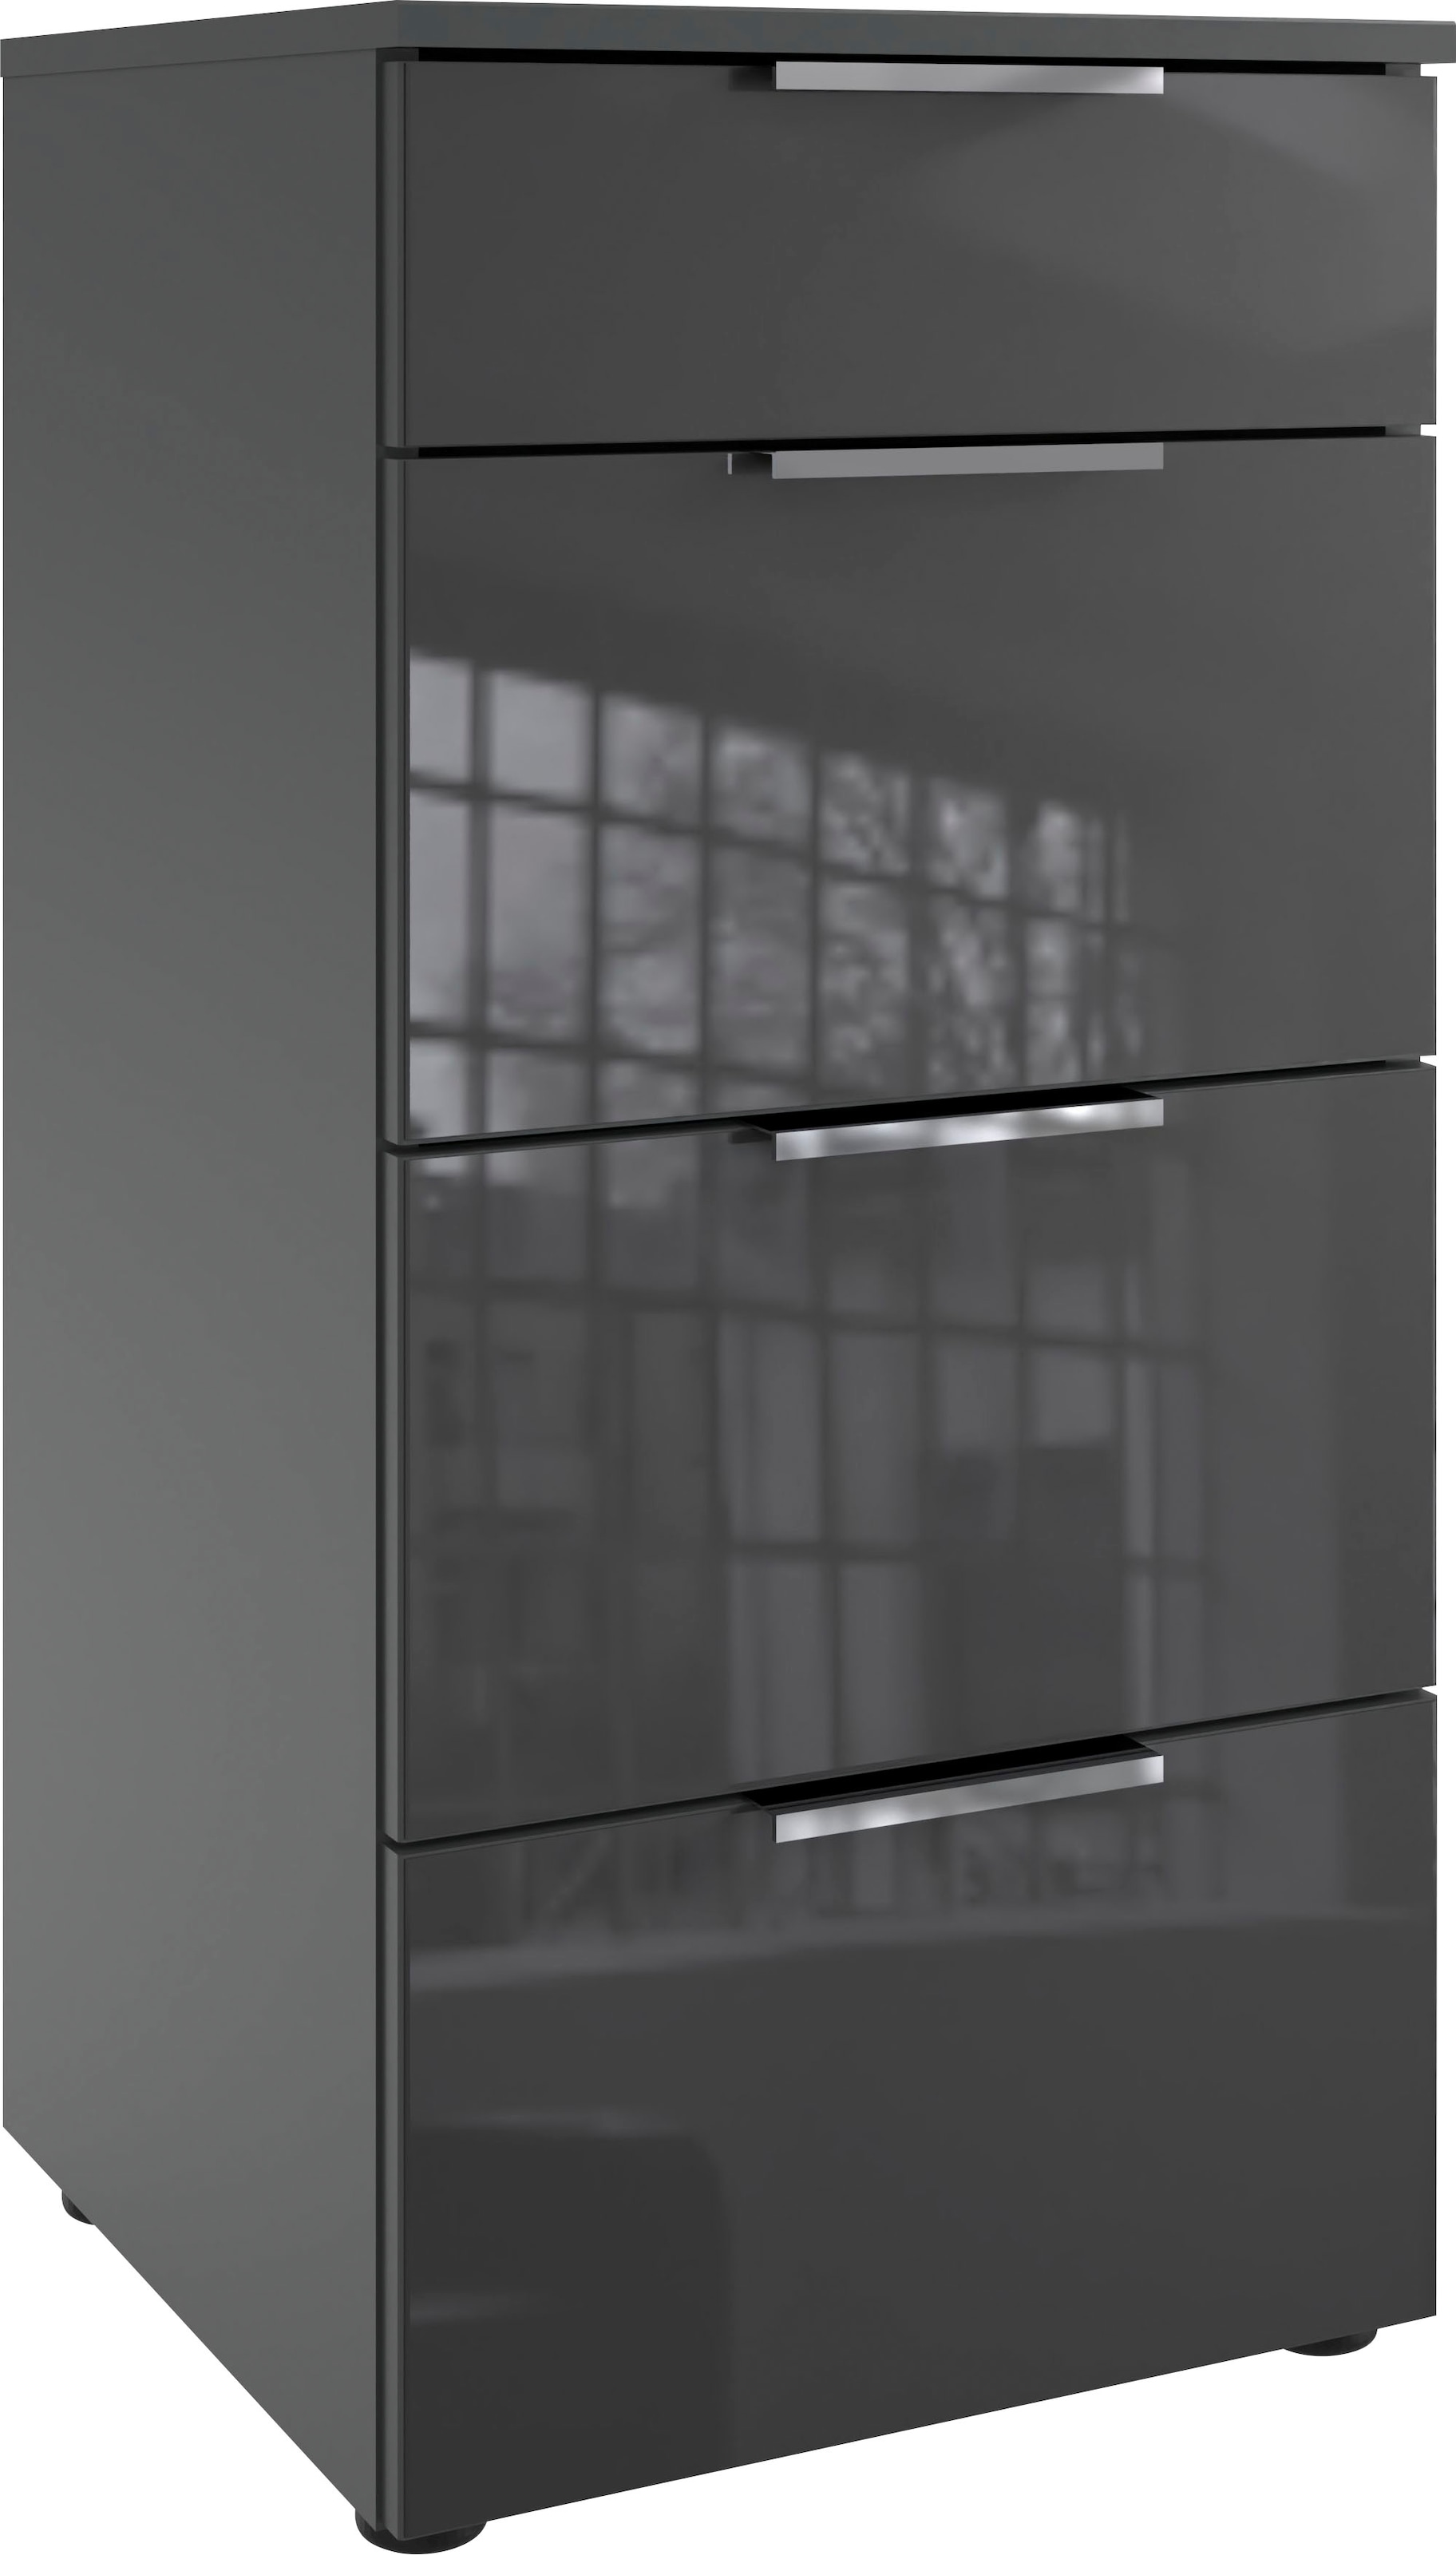 Wimex Schubkastenkommode »Level36 C by fresh to go«, mit Glaselementen auf der Front, soft-close Funktion, 41cm breit